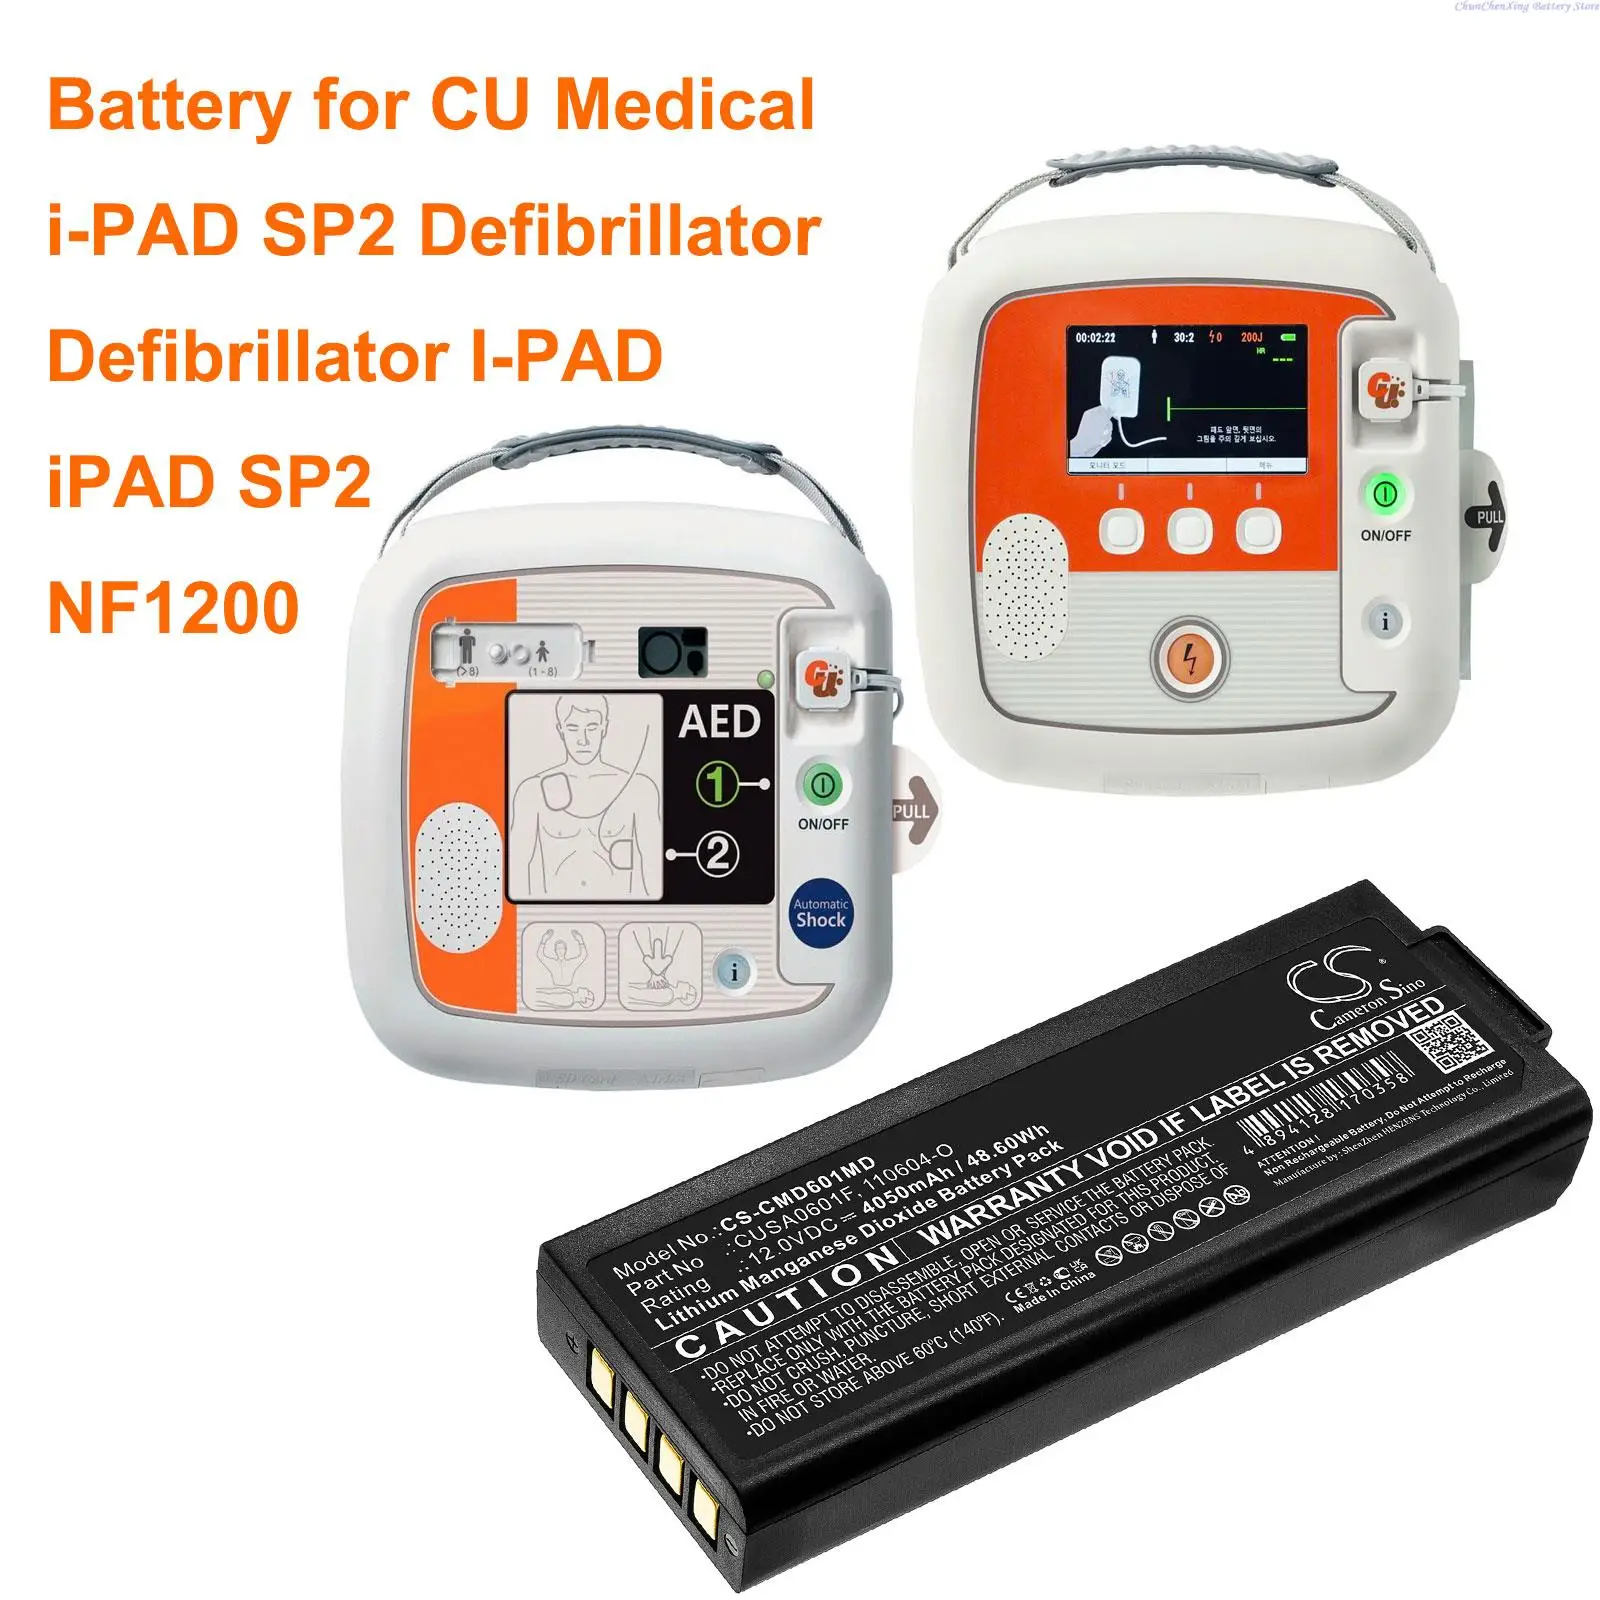 

CS 4050 мАч медицинская батарея CUSA0601F для CU медицинского дефибриллятора, iPAD SP2, NF1200, i-PAD SP2 + инструмент и подарки